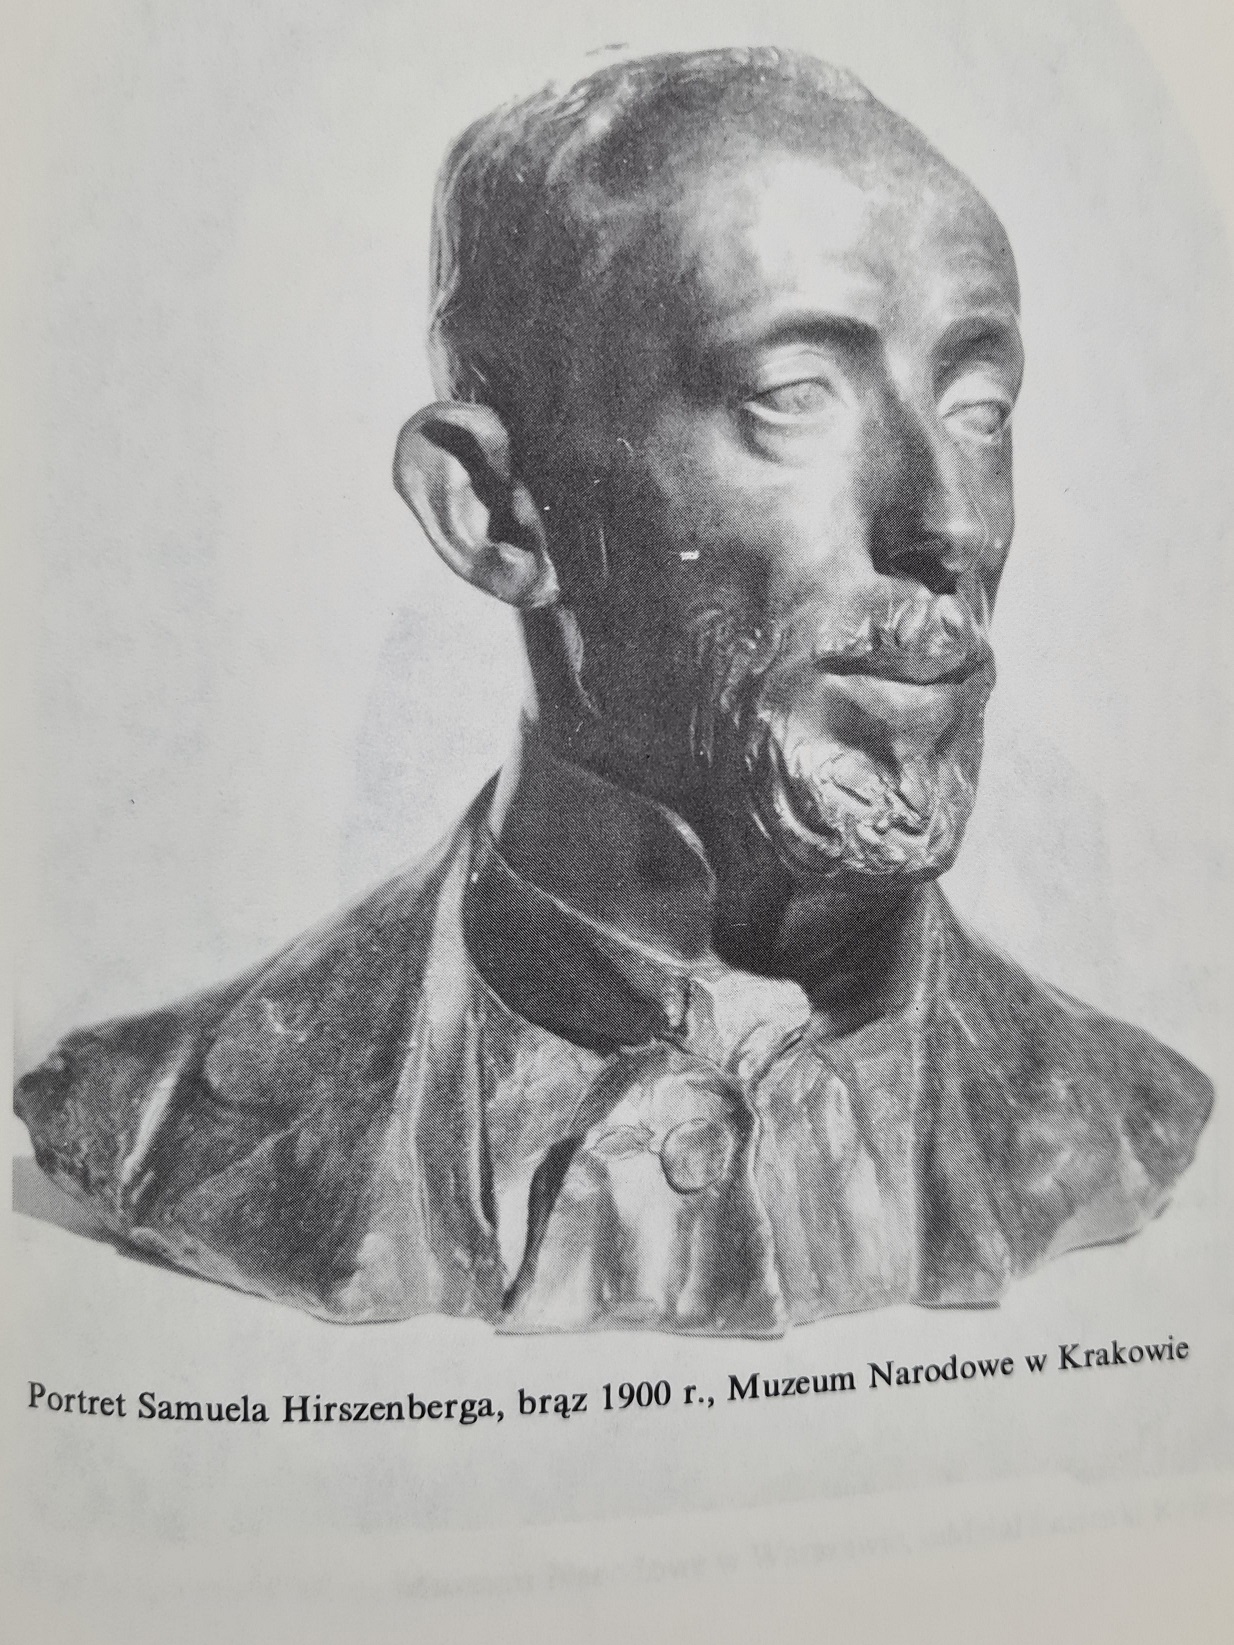 Henryk Glicenstein, Portret Samuela Hirszenberga, brąz 1900, Muzeum Narodowe w Krakowie.